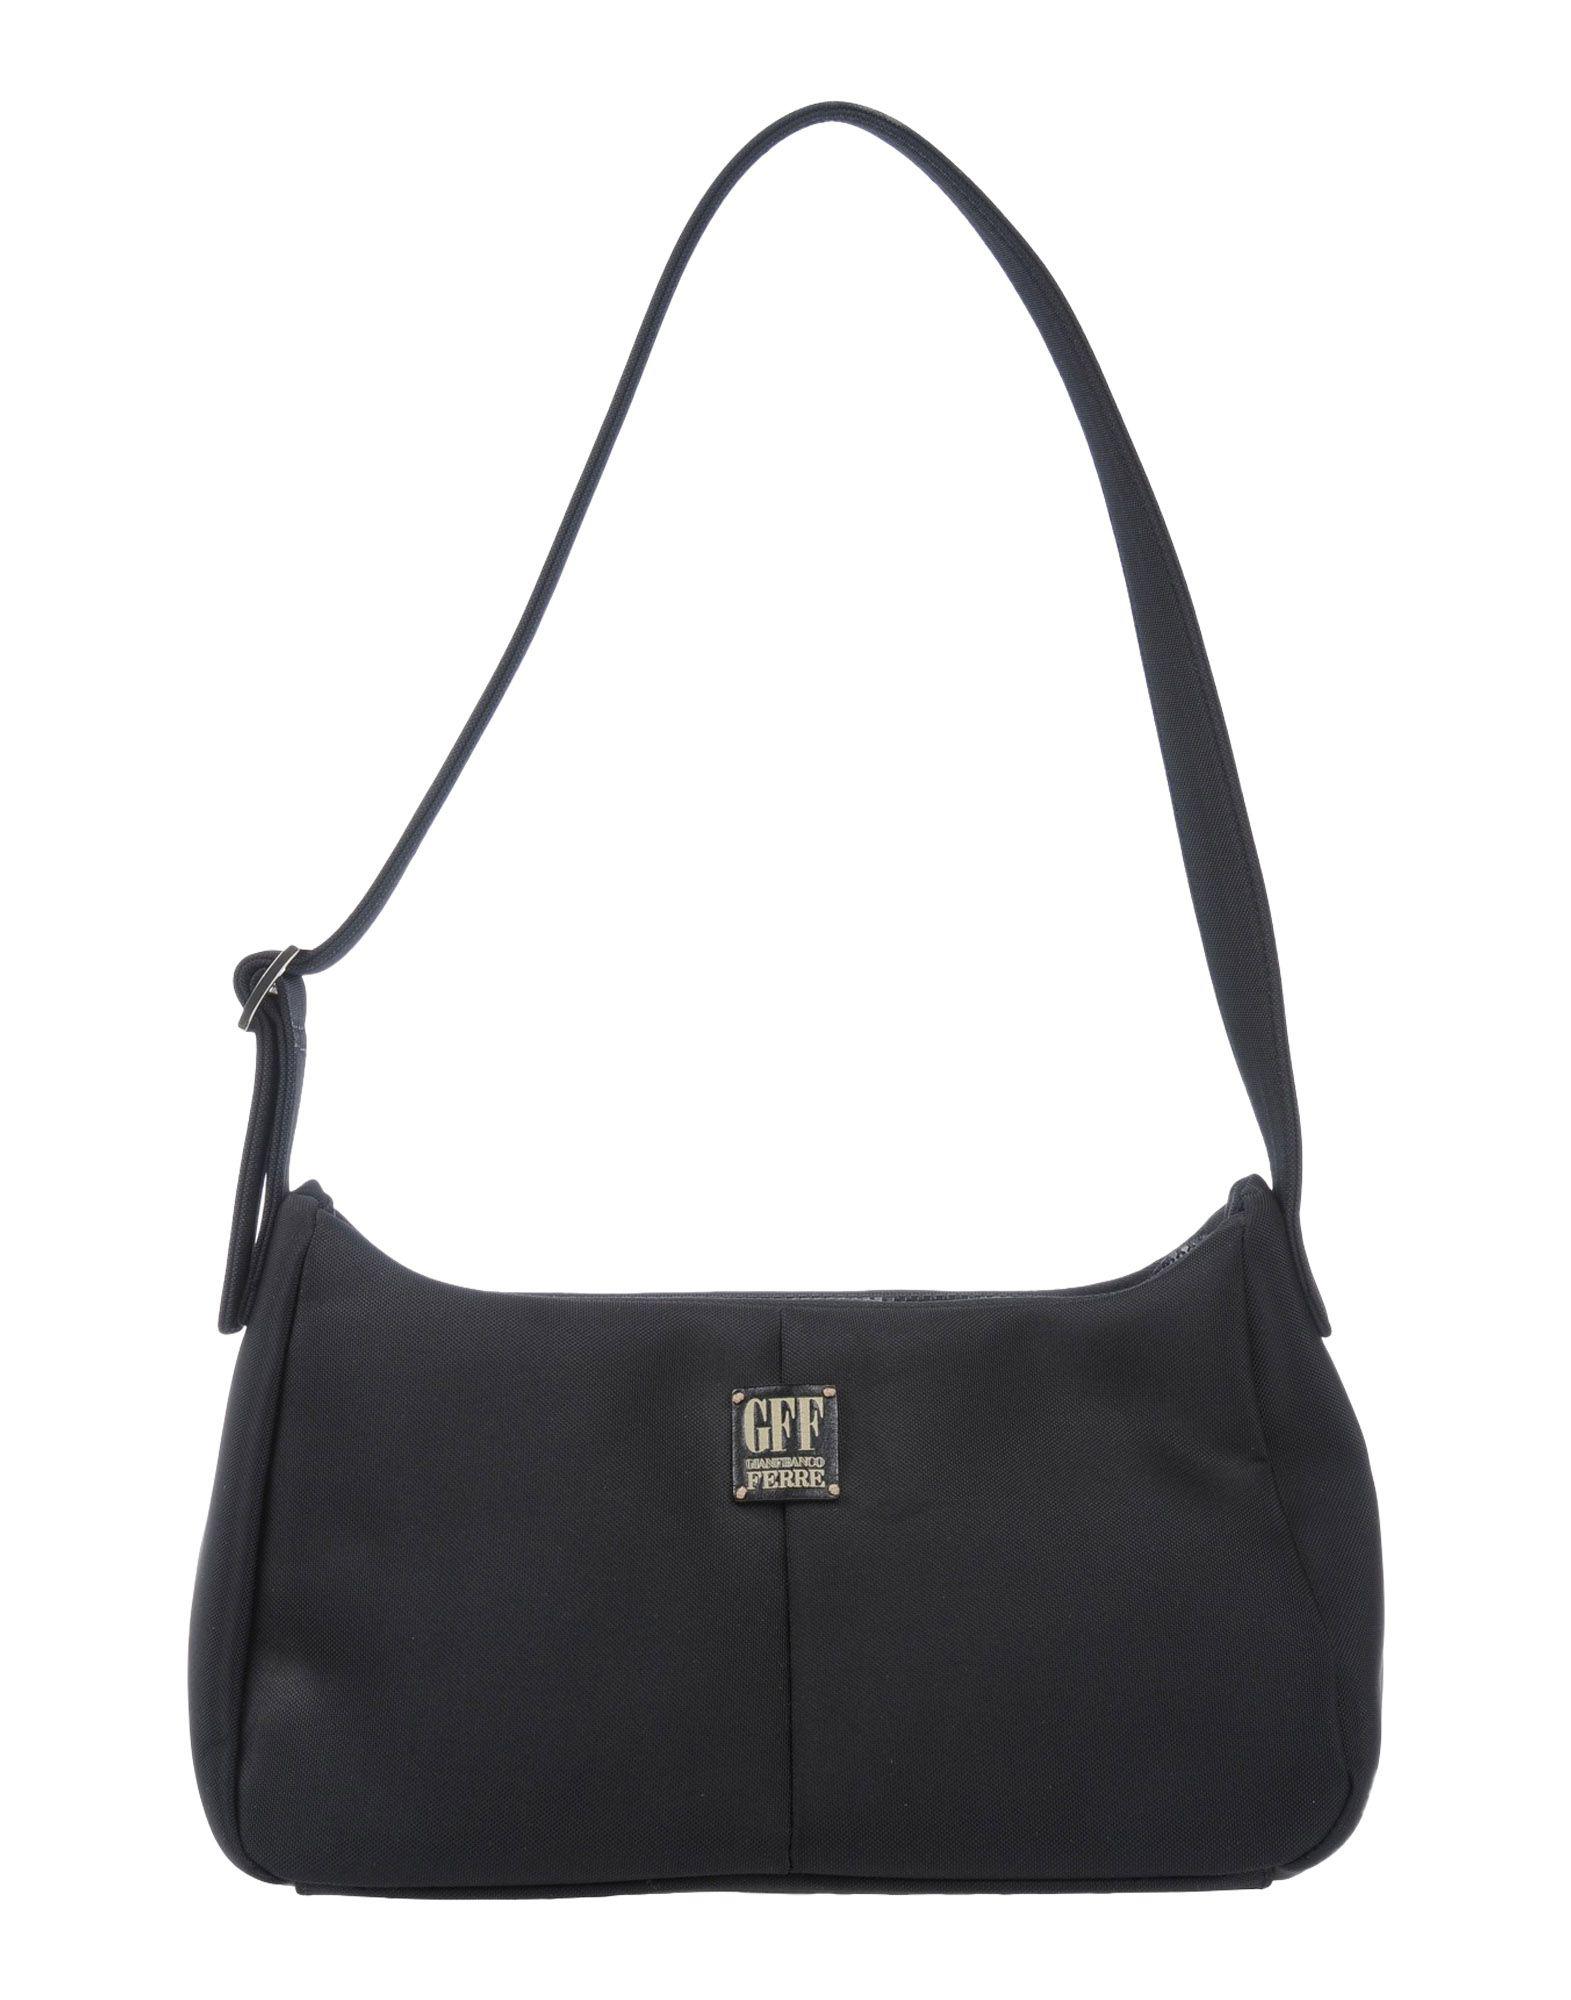 Gianfranco Ferré Shoulder Bag in Black | Lyst